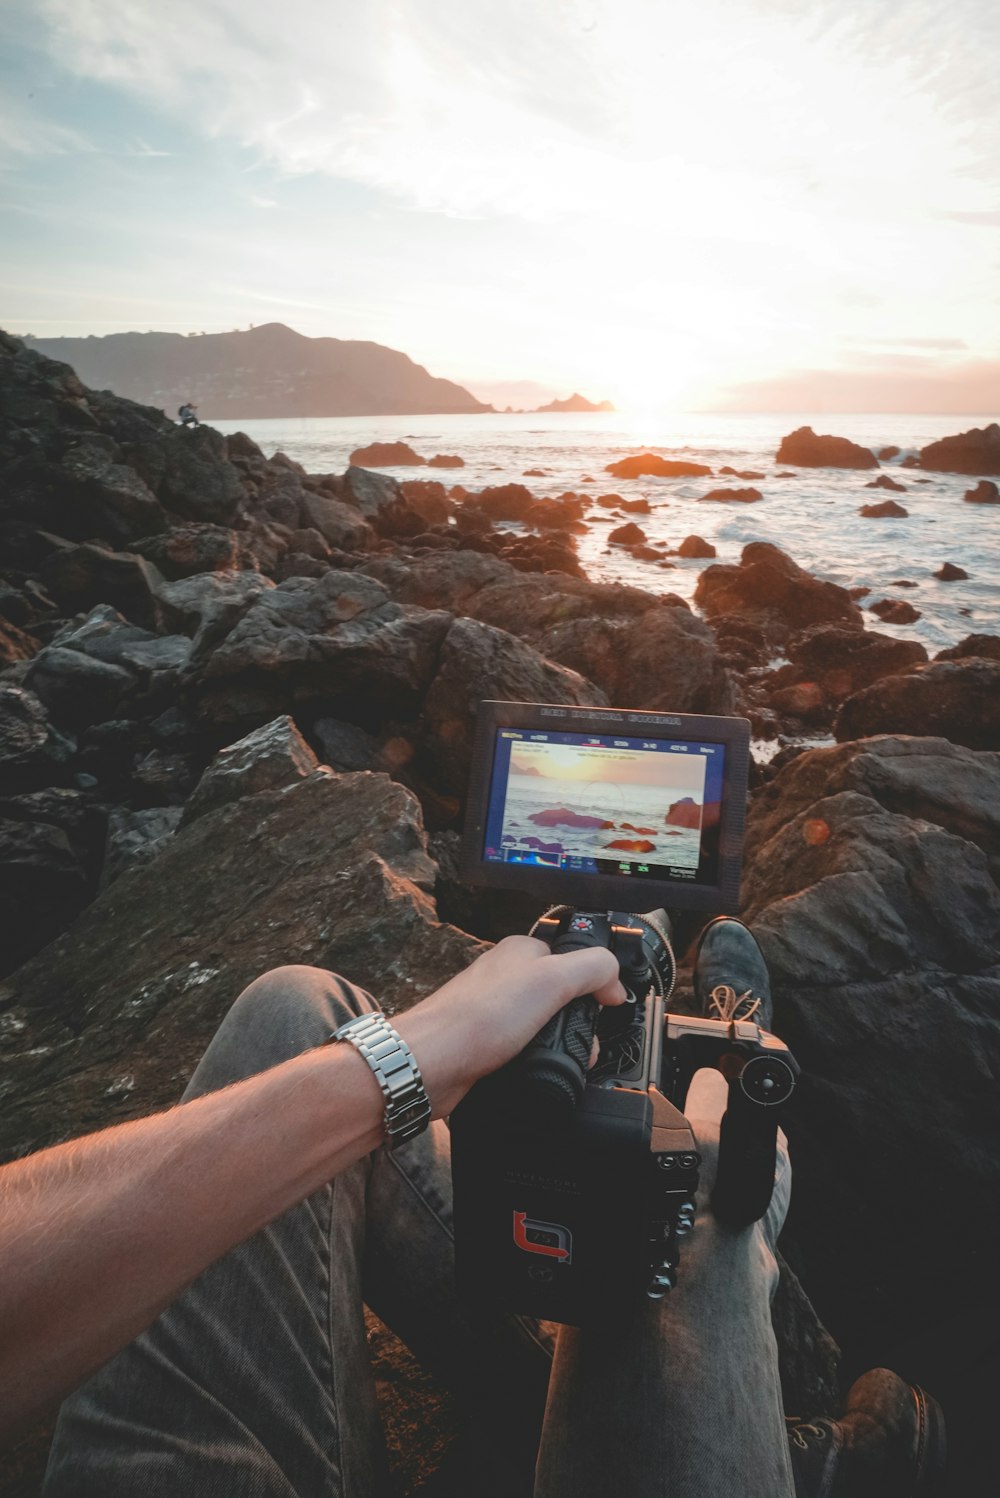 personne prenant une photo du bord de mer à l’aide d’un appareil photo professionnel